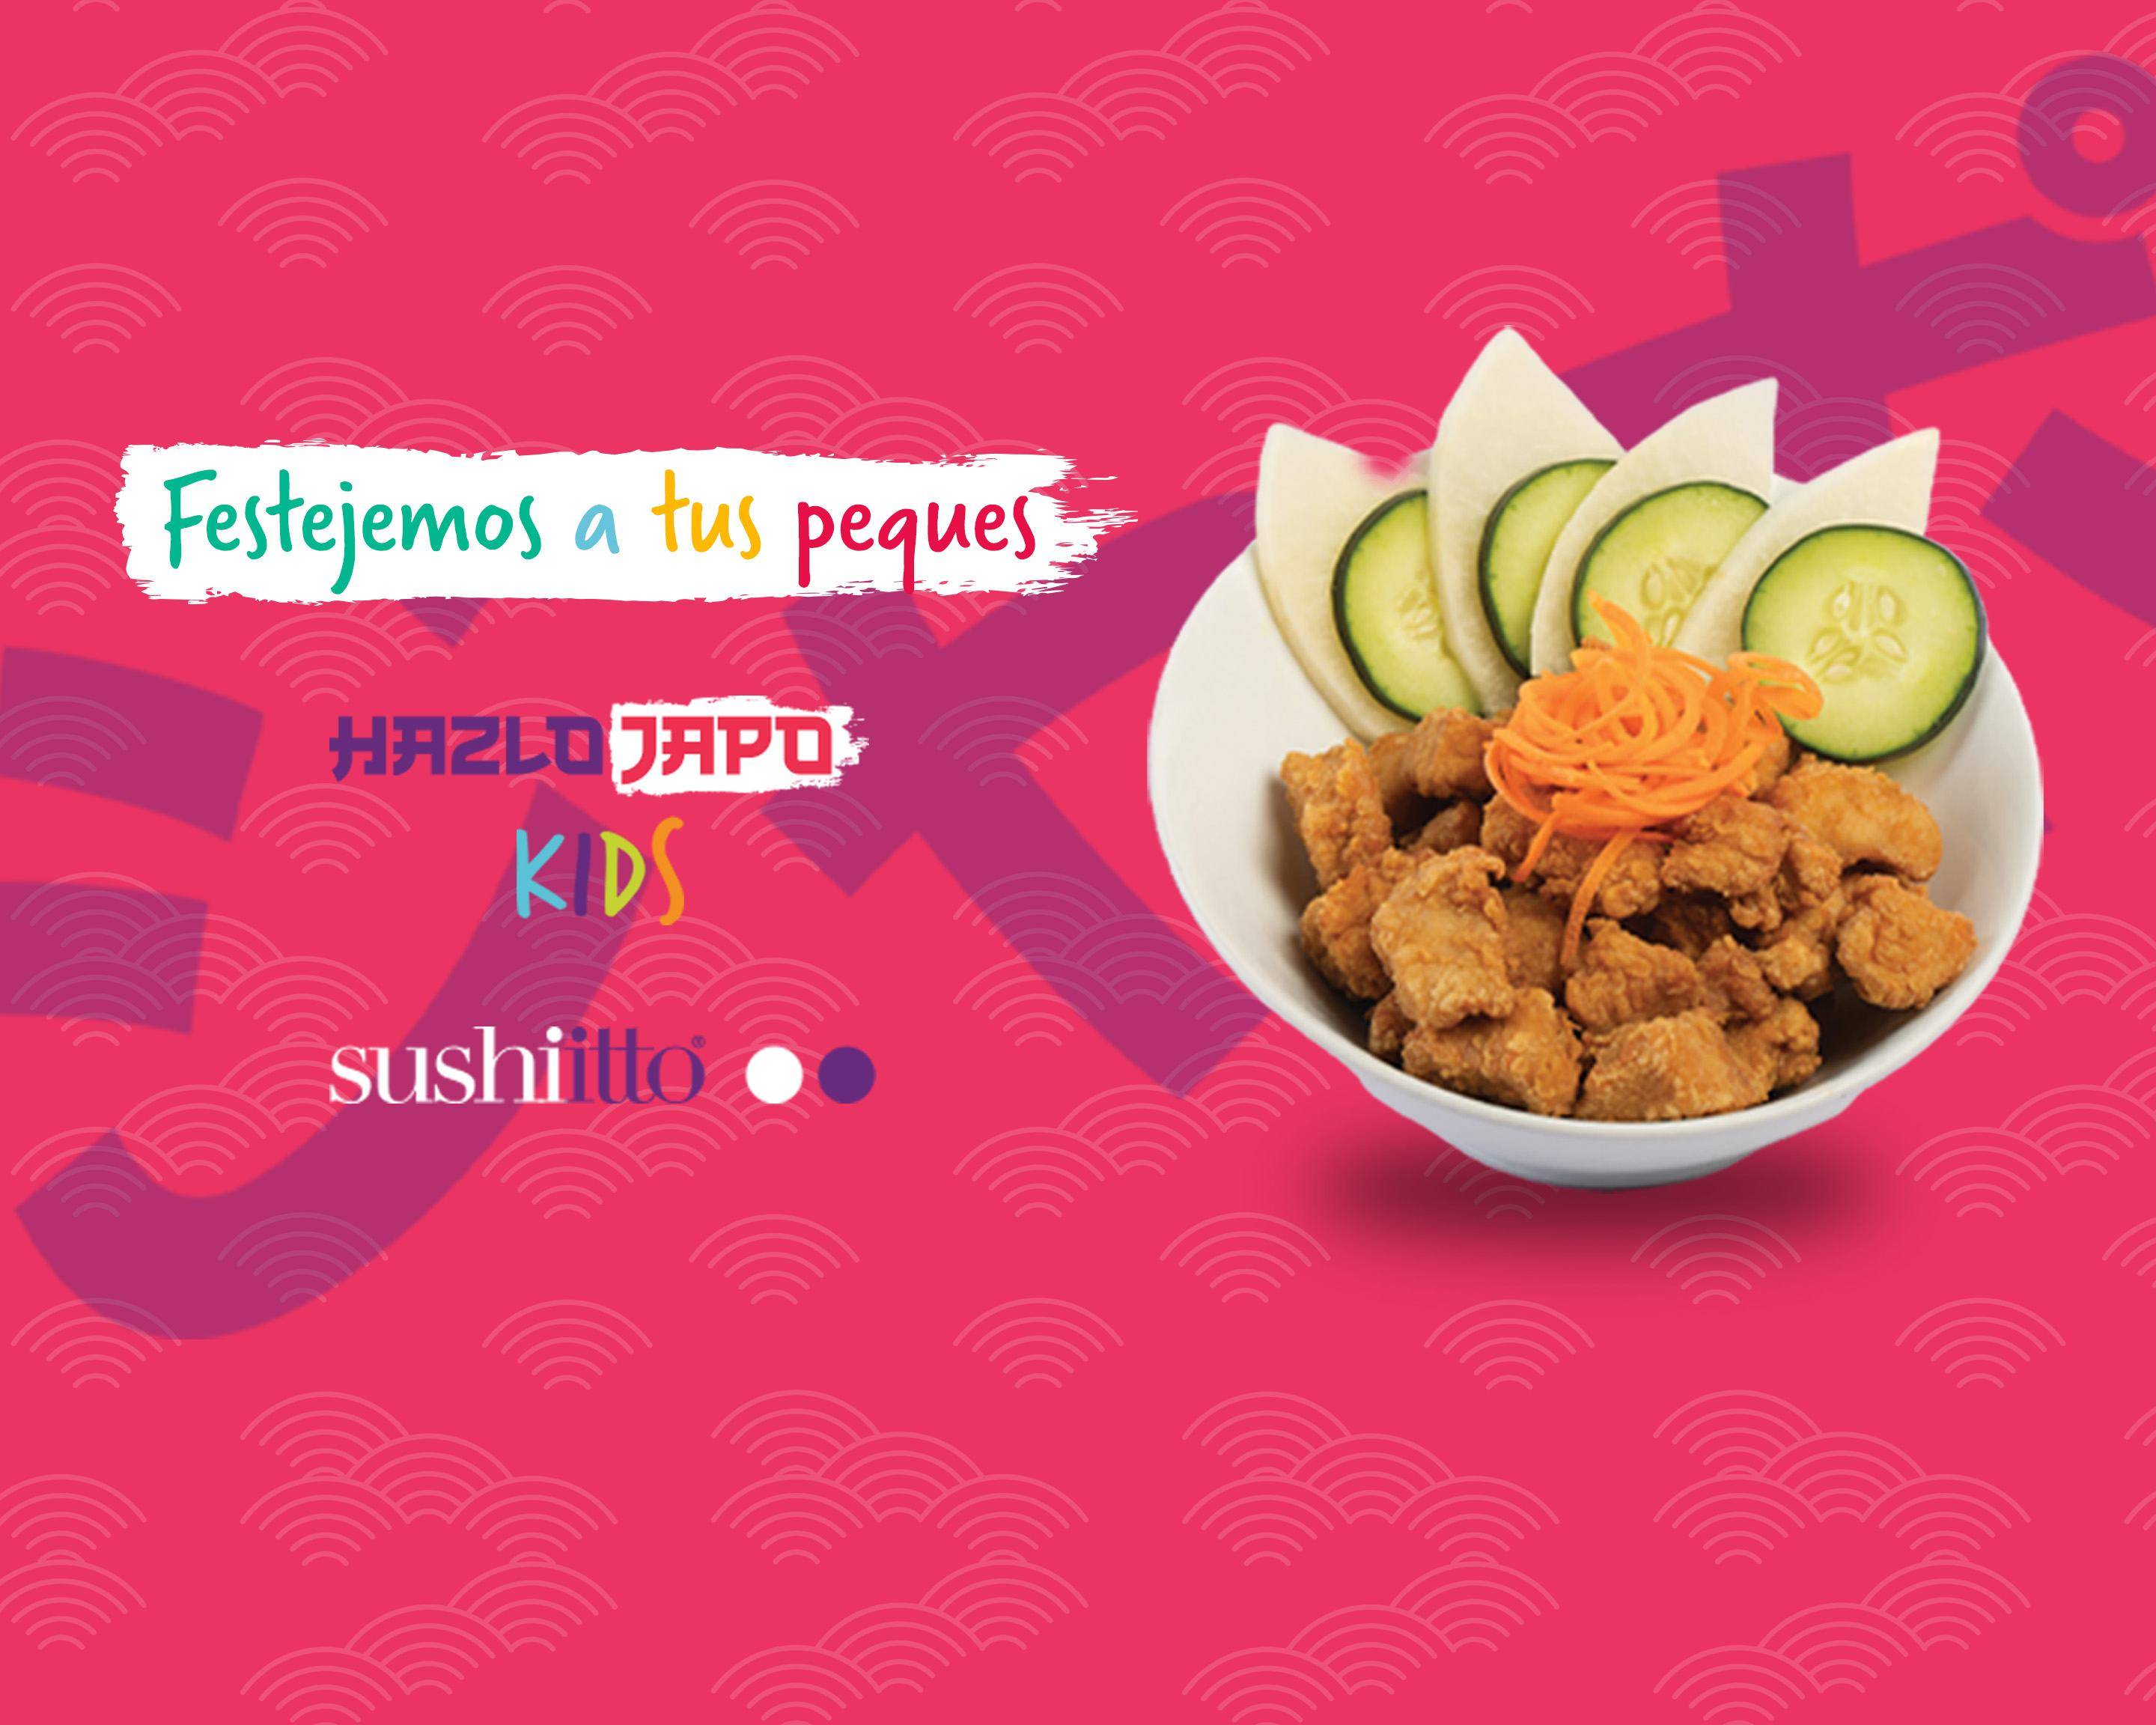 Sushi Itto (Las Águilas) Menu Delivery【Menu & Prices】Mexico City | Uber Eats